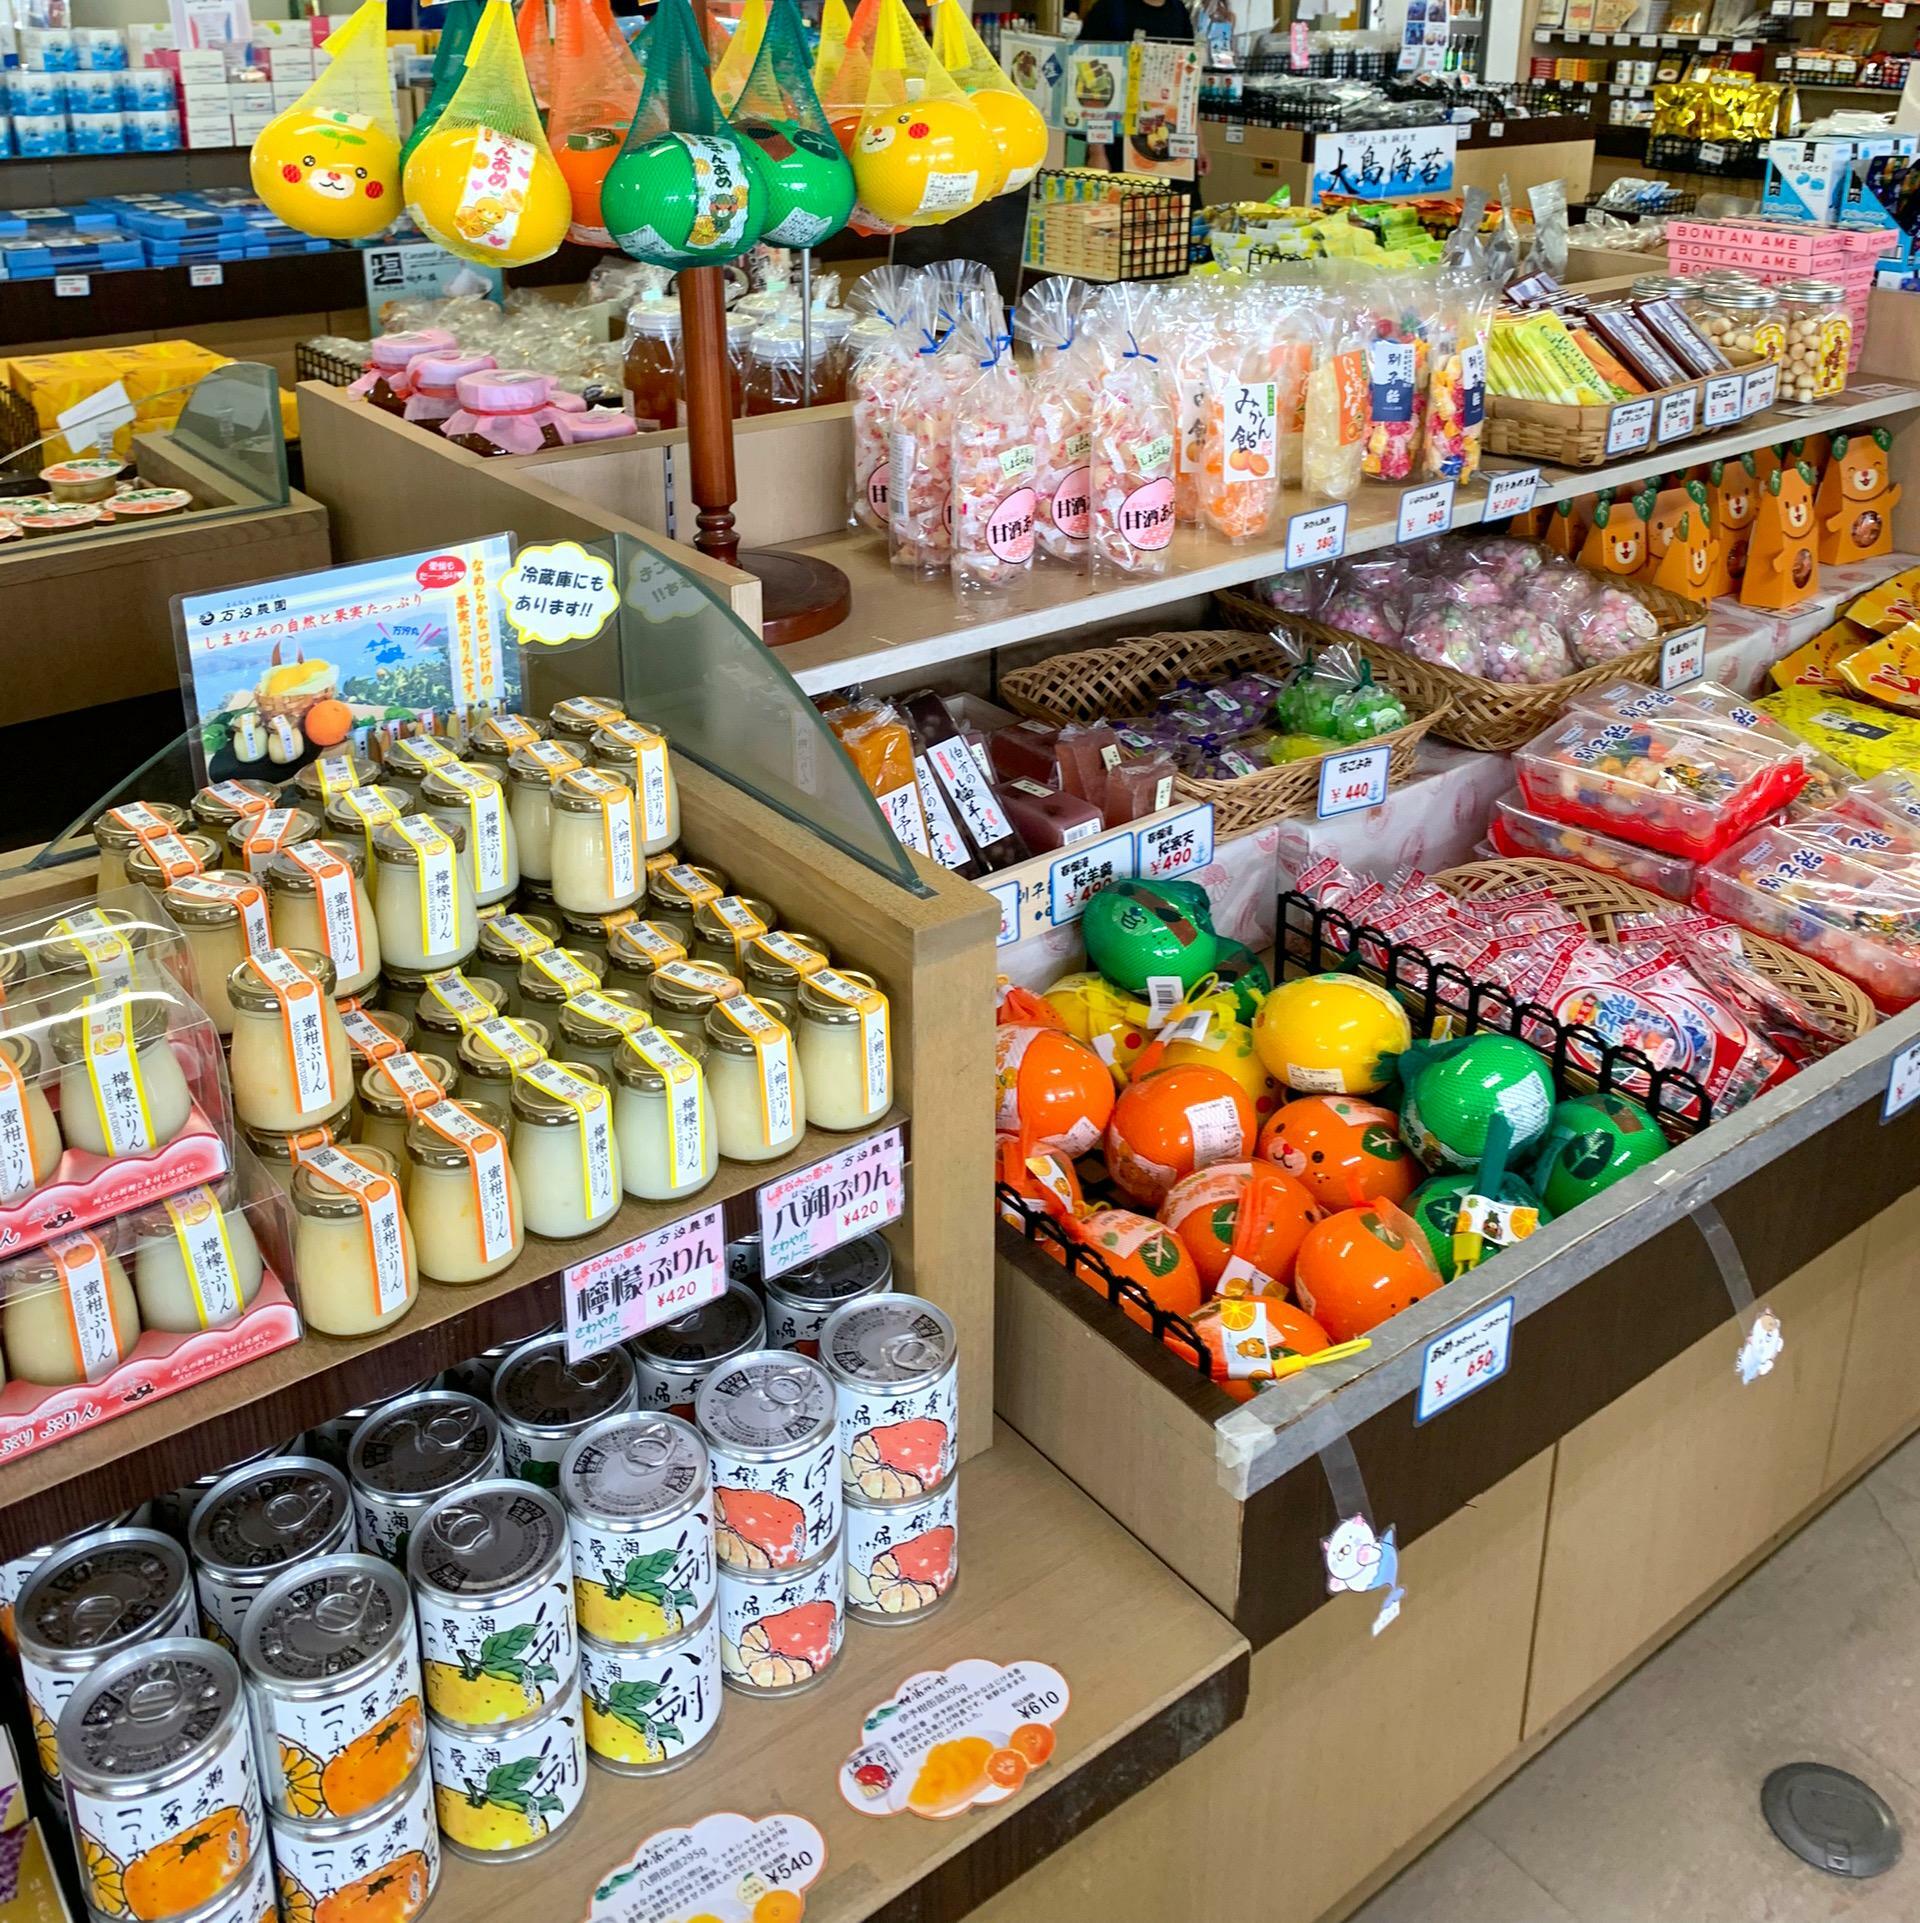 店内にはみかん風味の「蜜柑ぷりん」など今治特有の個性豊かな商品が多く並んでいました。